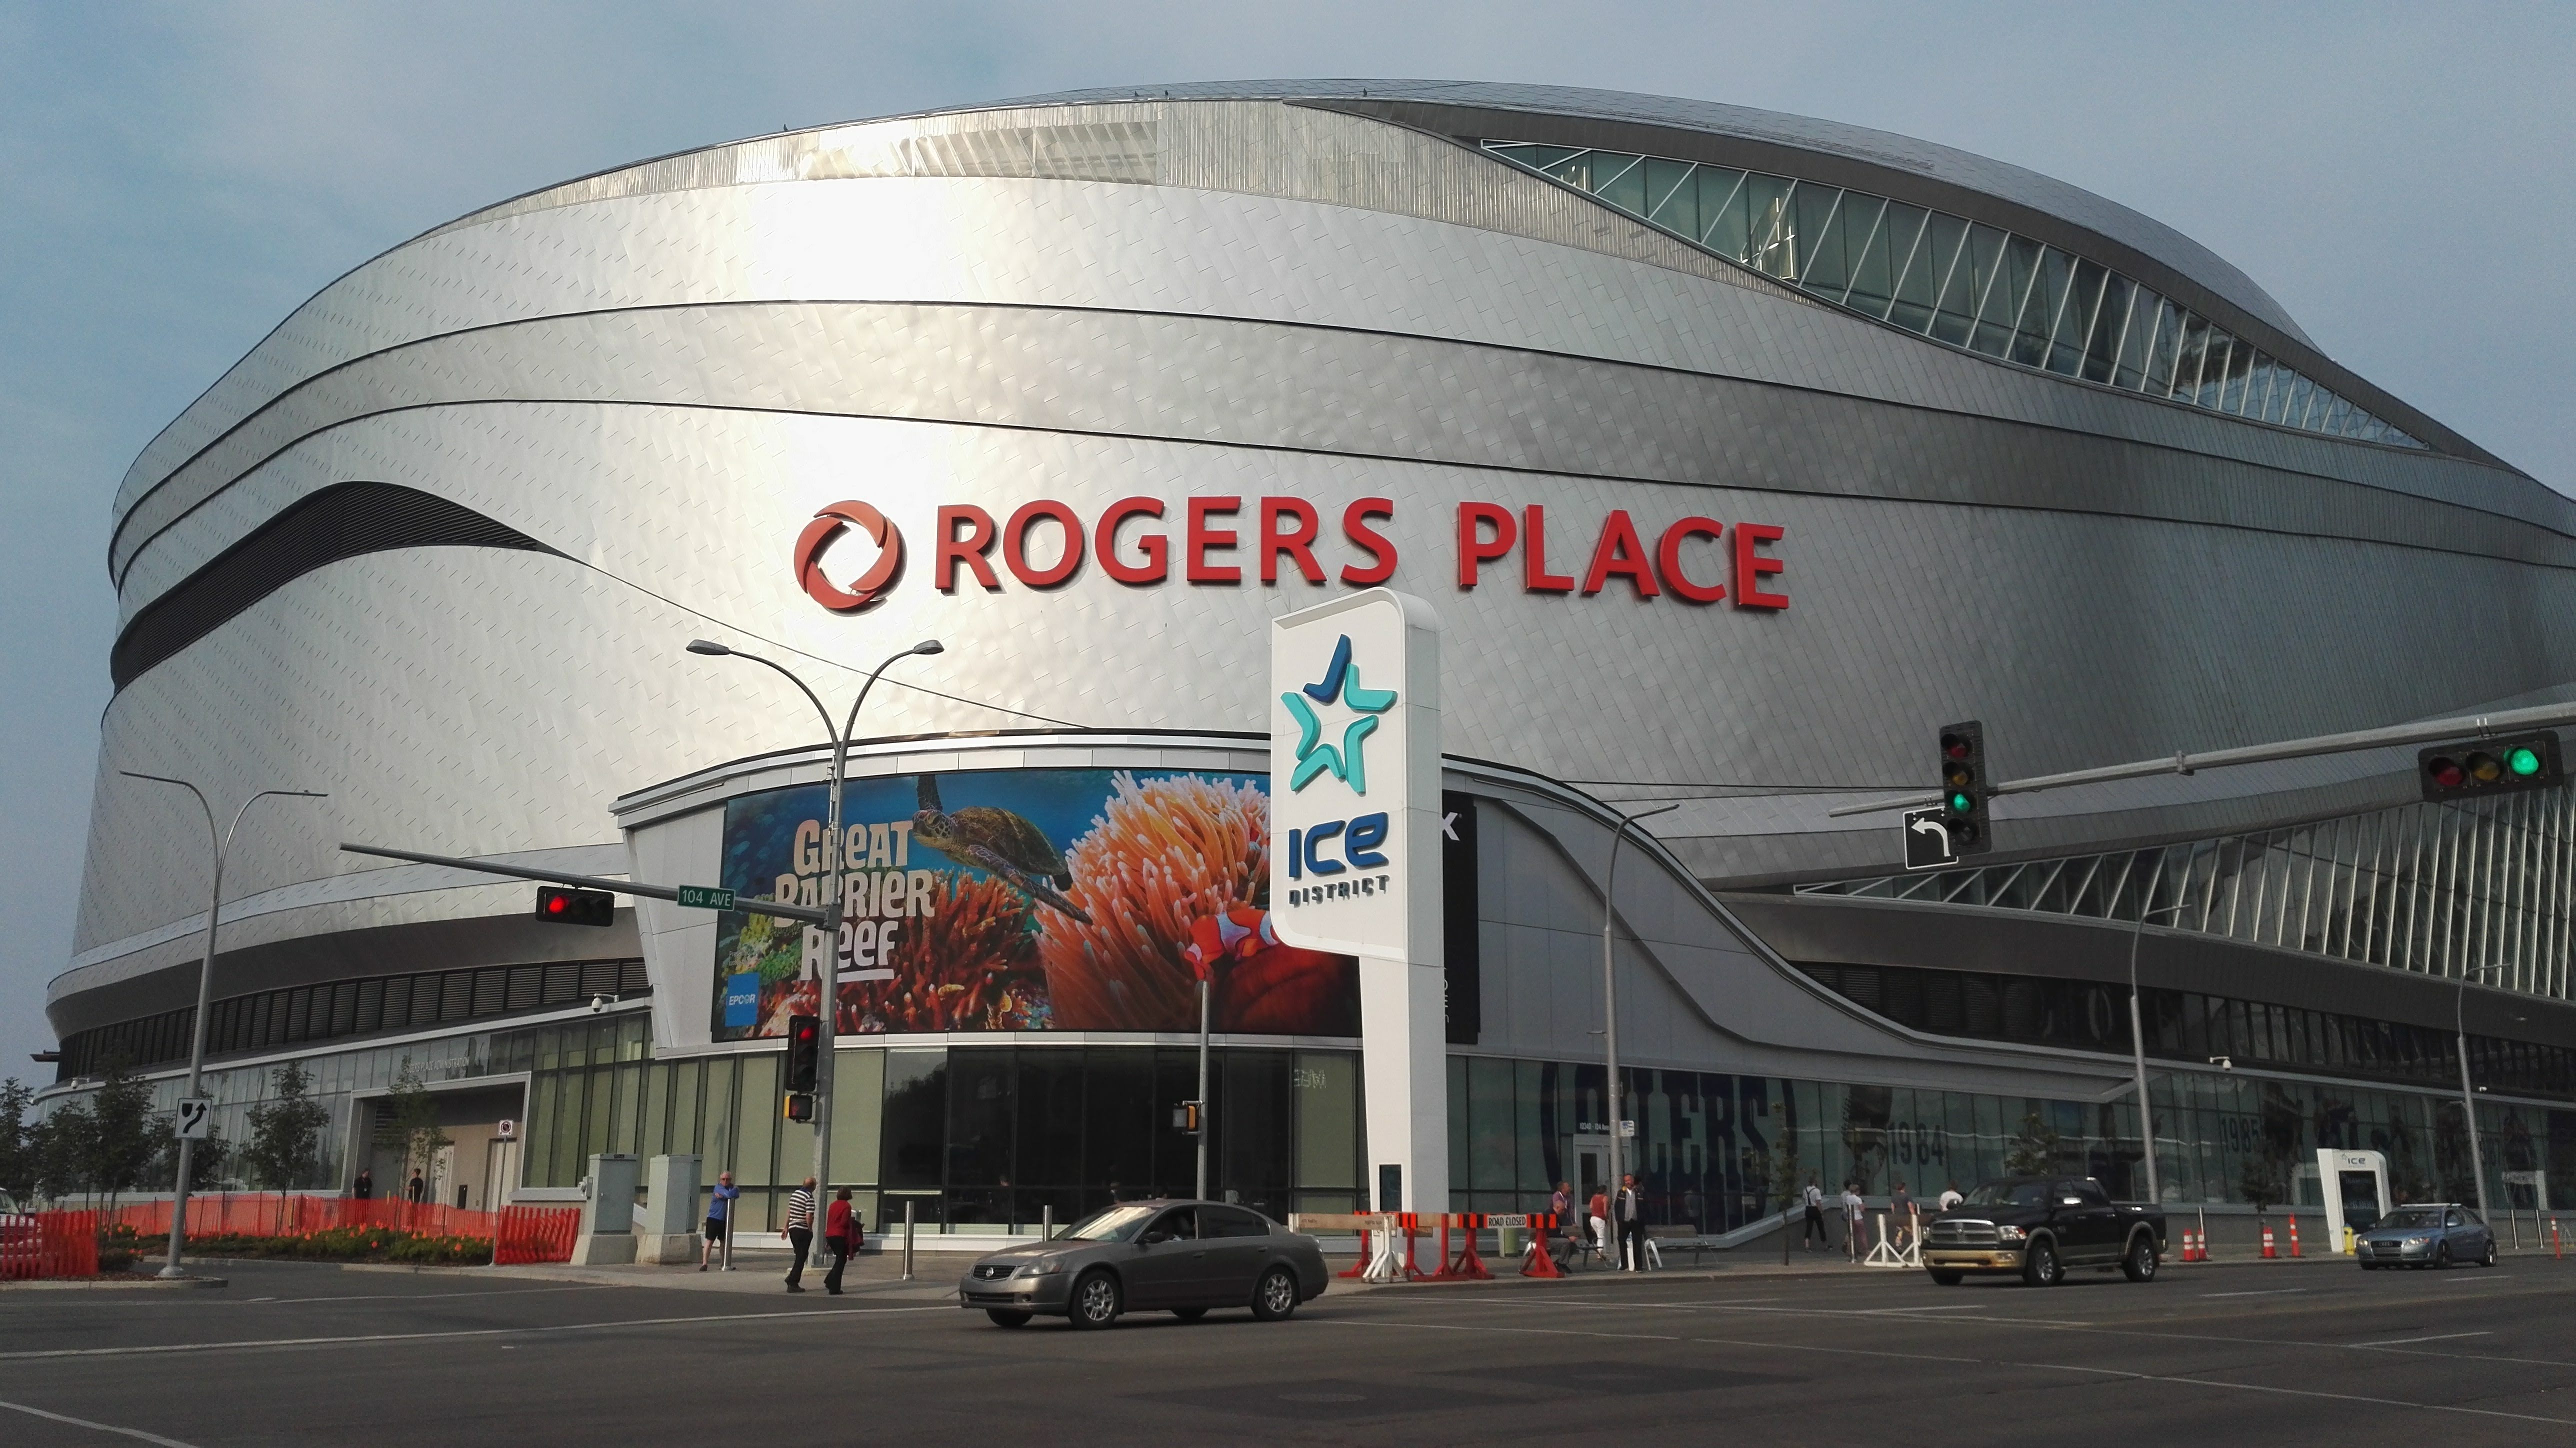 Rogers place se nachází v centru Edmontonu a je dominantou okolí